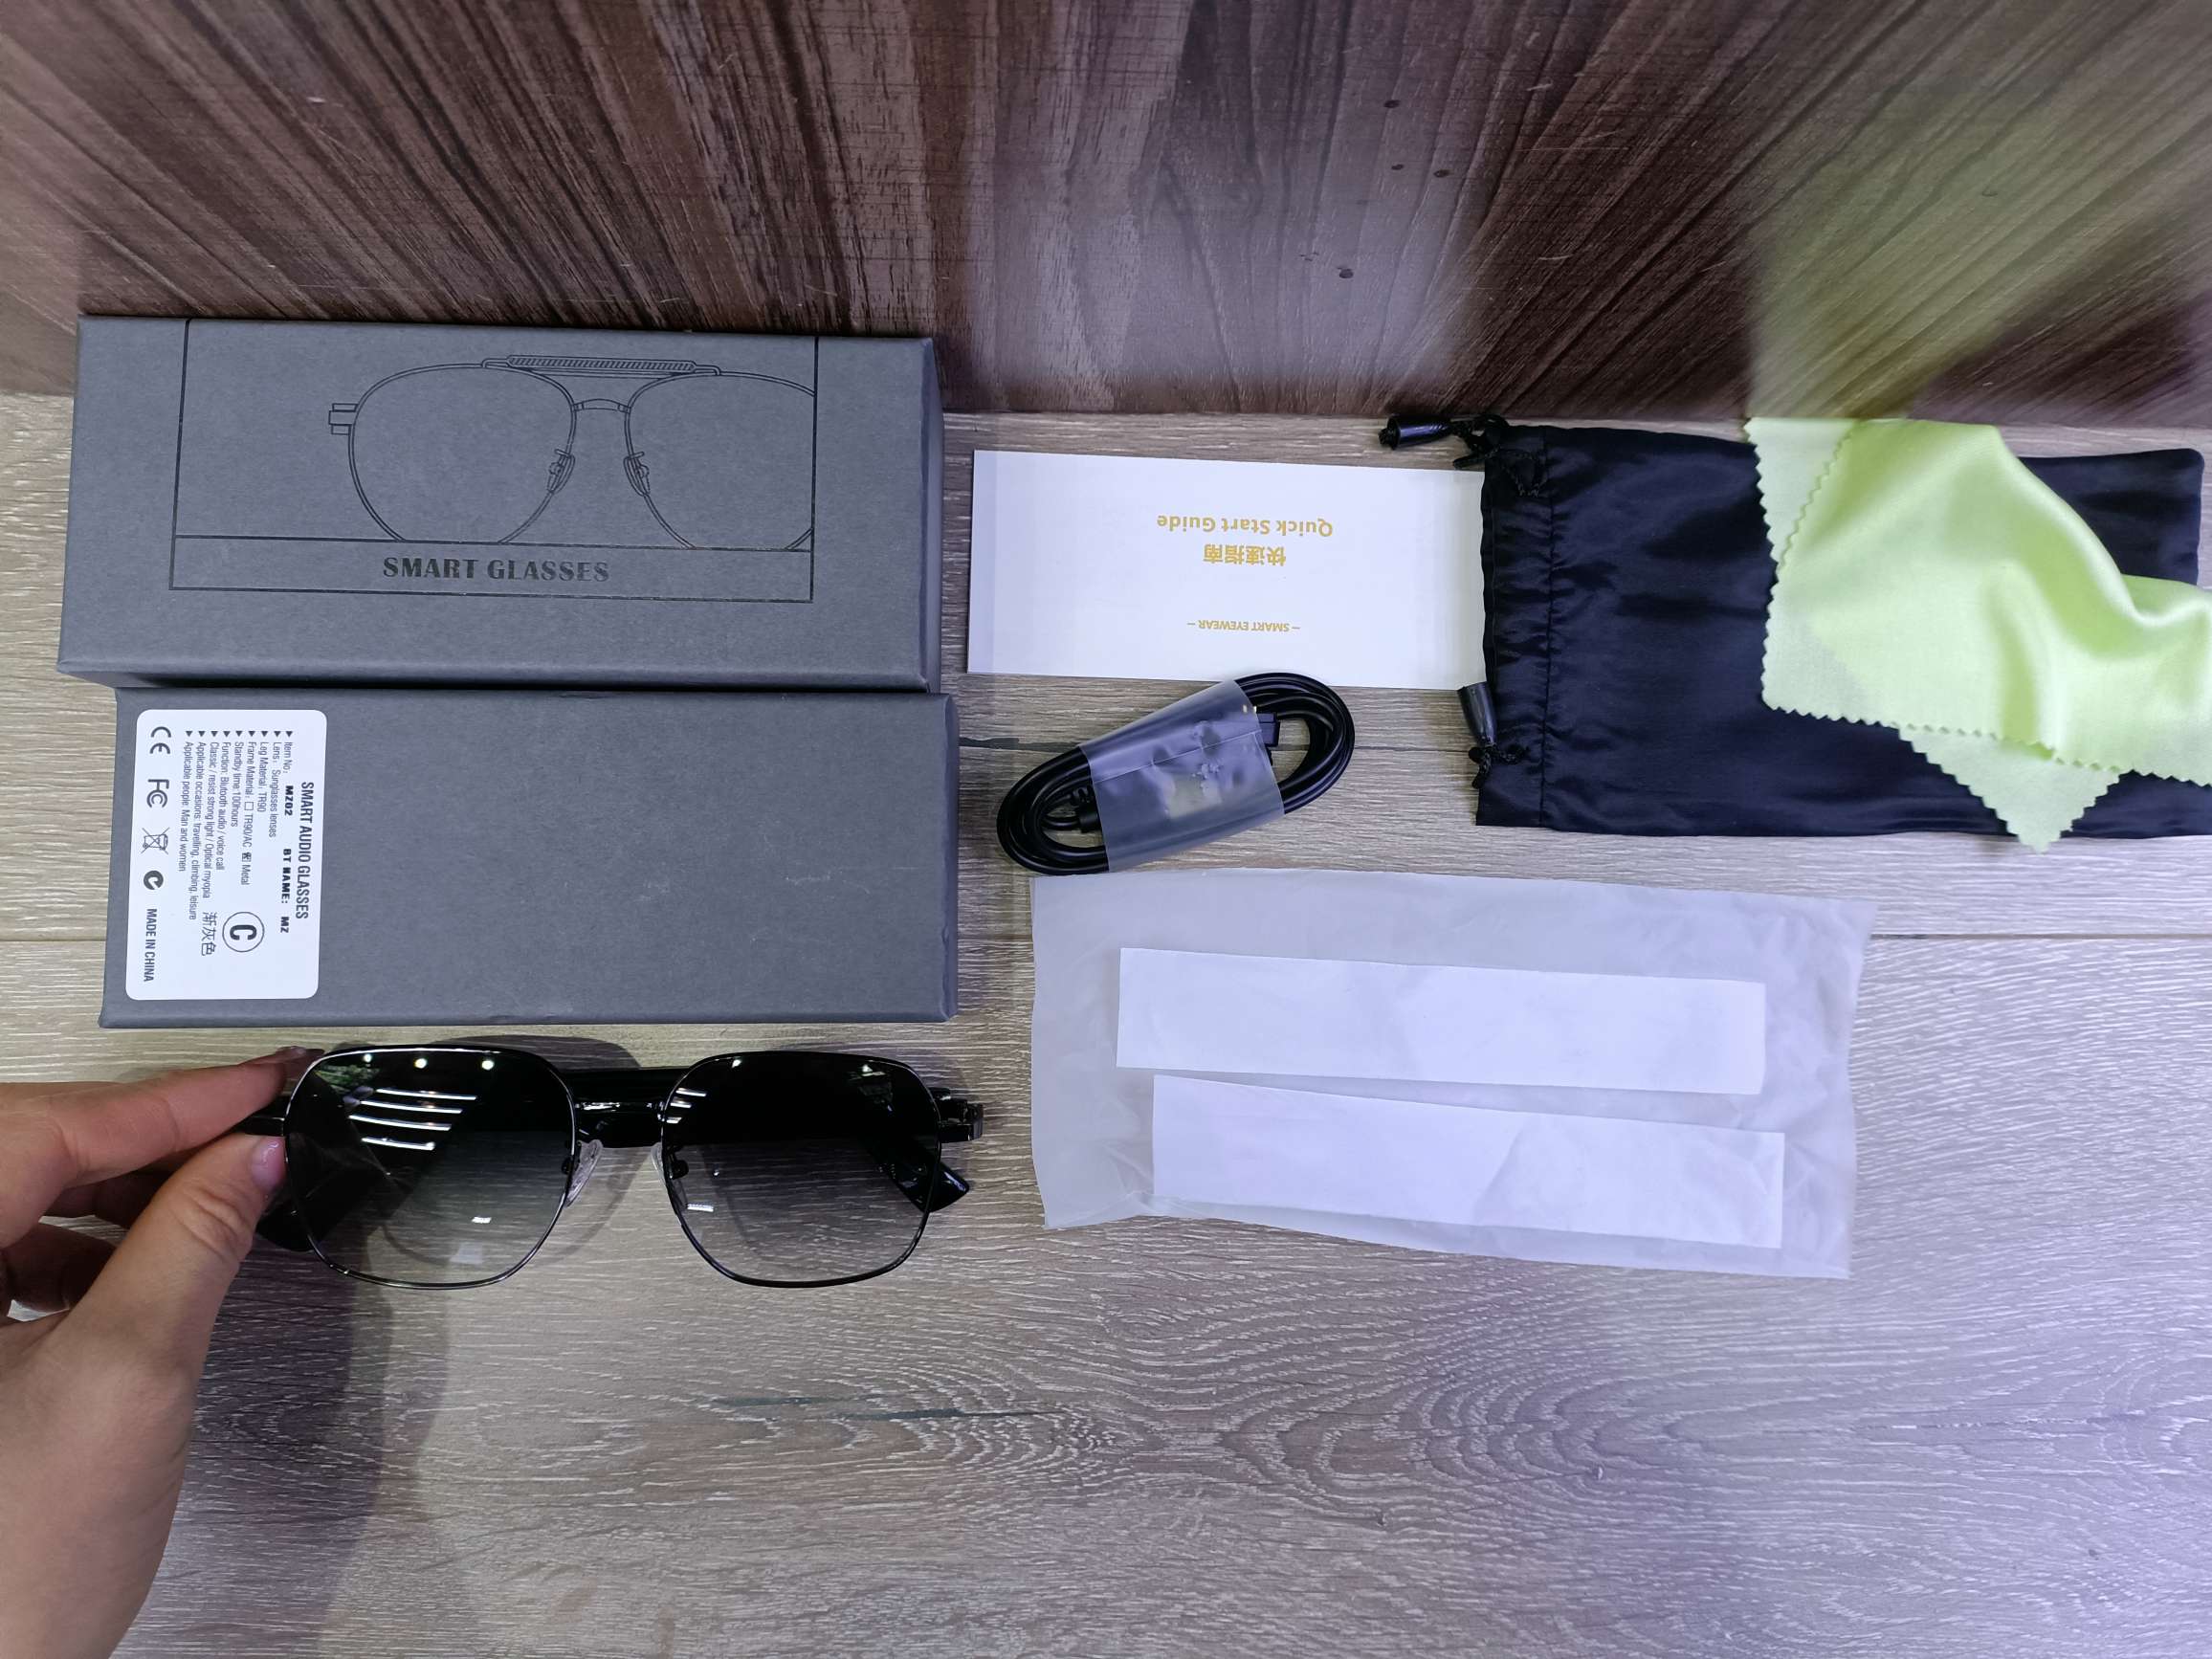 MZ02蓝牙眼镜智能眼镜听歌通话墨镜防UV400紫外线 支持快充智能蓝牙紫外线太阳镜通话音乐骑行户外多功能打电话时尚眼镜详情图2